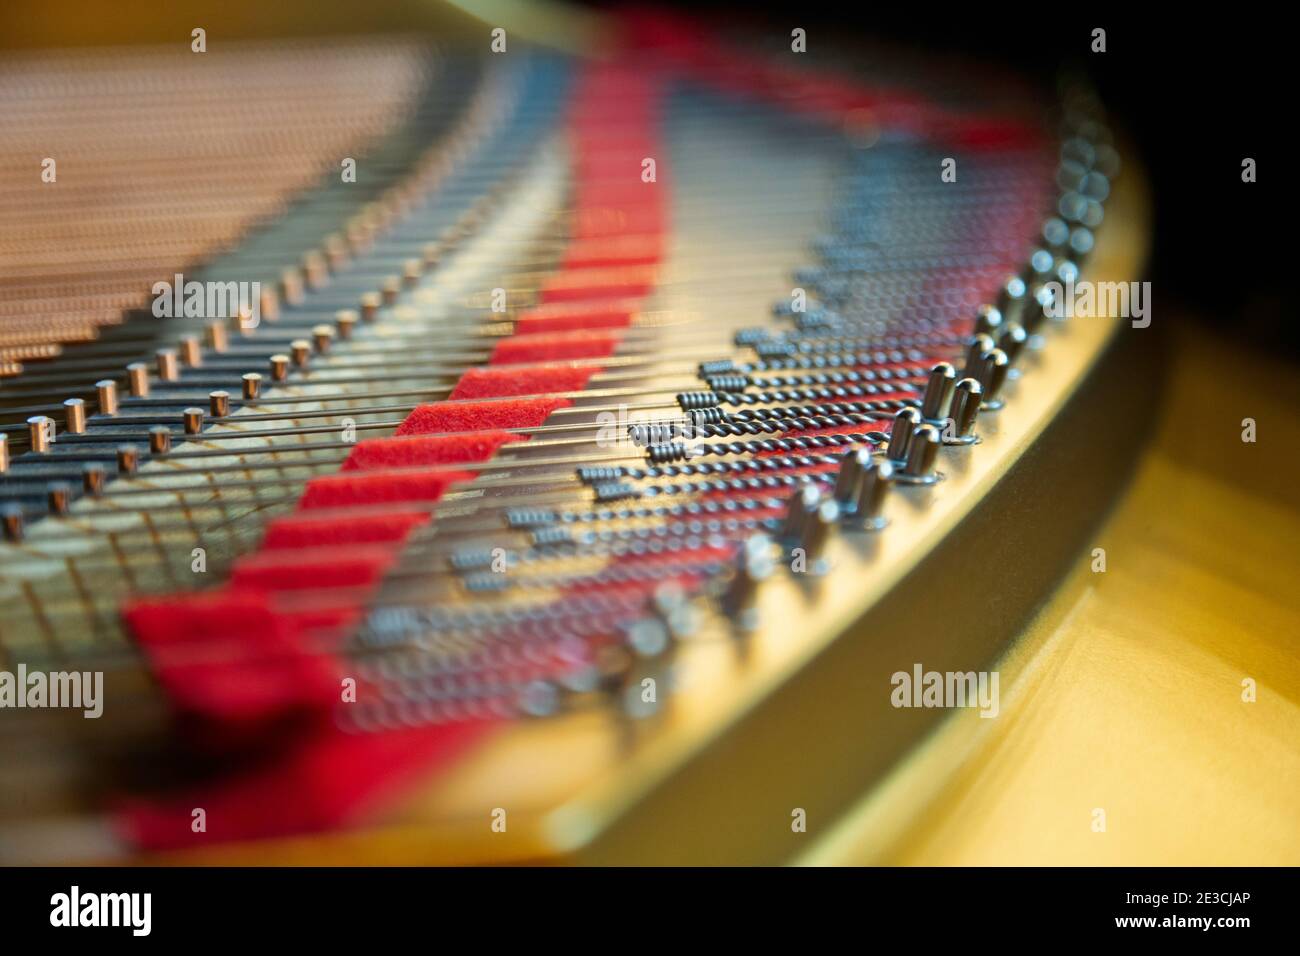 Der farbenfrohe Teil des Resonanzboden eines deutschen Steinway M Klaviers. Licht ist Sonnenlicht durch ein nahe gelegenes Fenster. Stockfoto